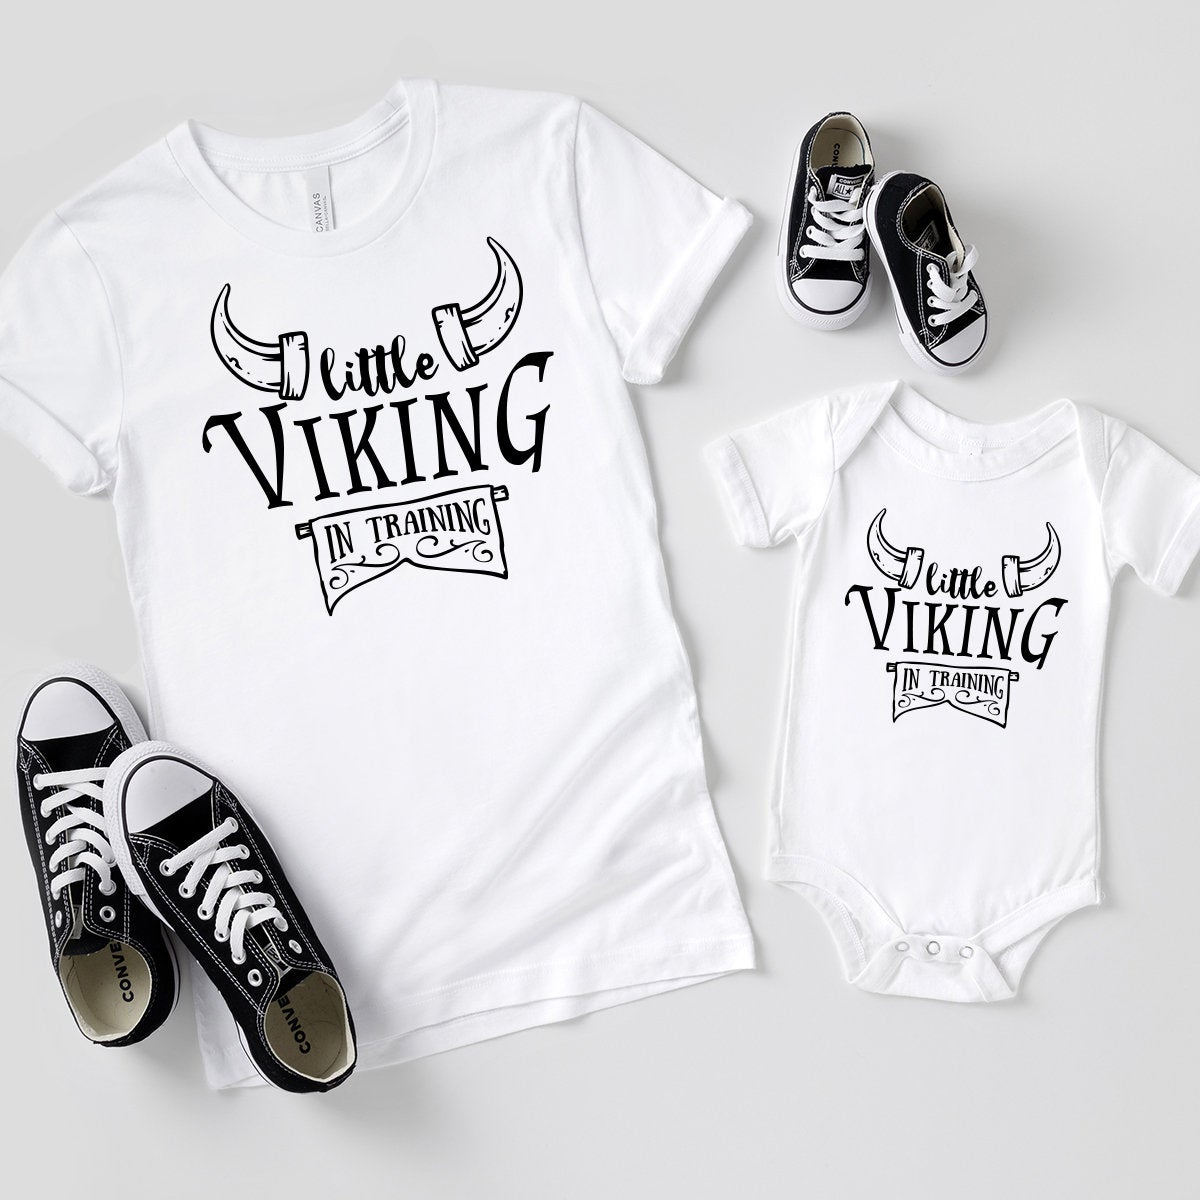 Kids Viking Shirt, Children's Viking, Little Viking Shirt, Vikings Kid, Viking In Training Shirt, T-Shirt For Baby, Funny Shirt For Toddler - Fastdeliverytees.com